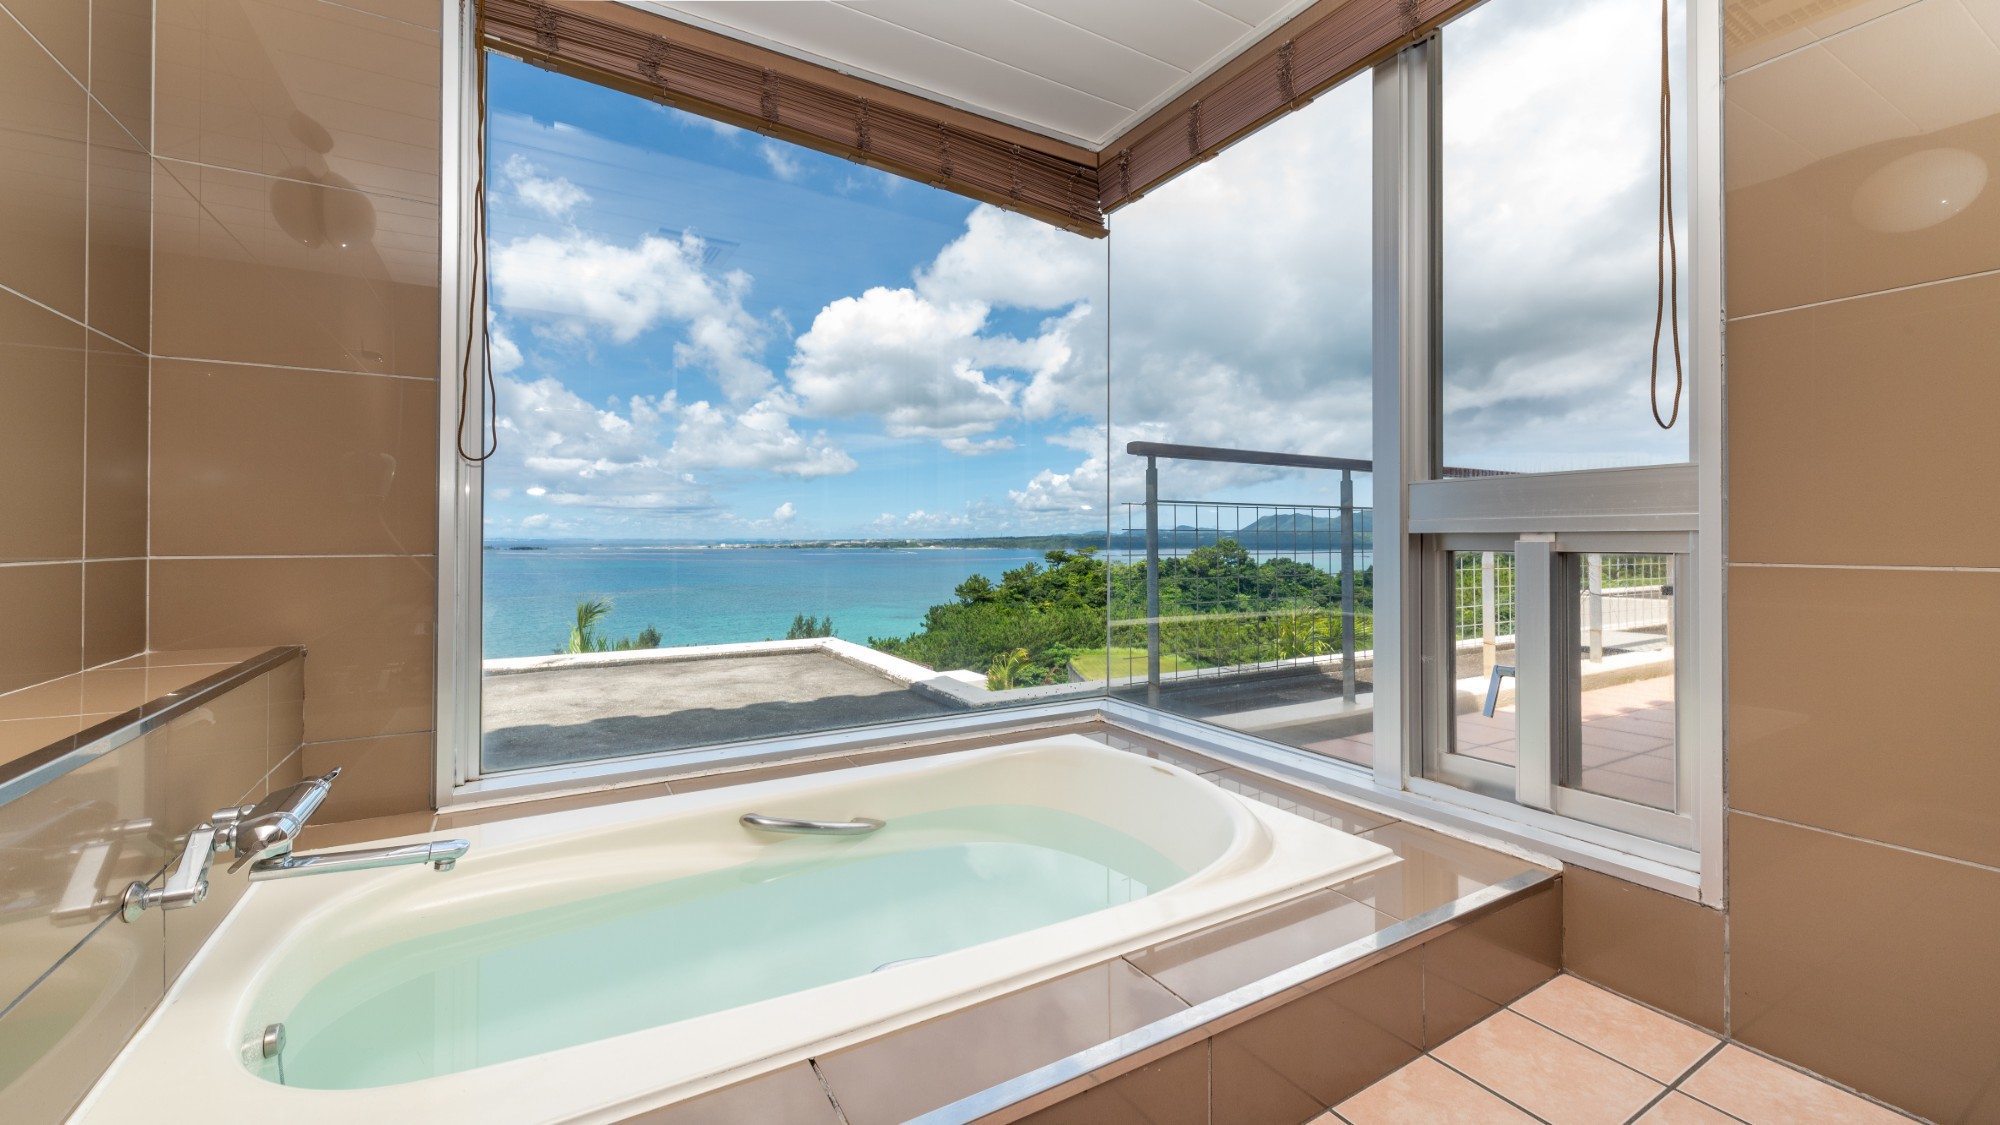 【アゼリアスイート】外の景色が楽しめる展望風呂。窓の向こうに広がる青い海。